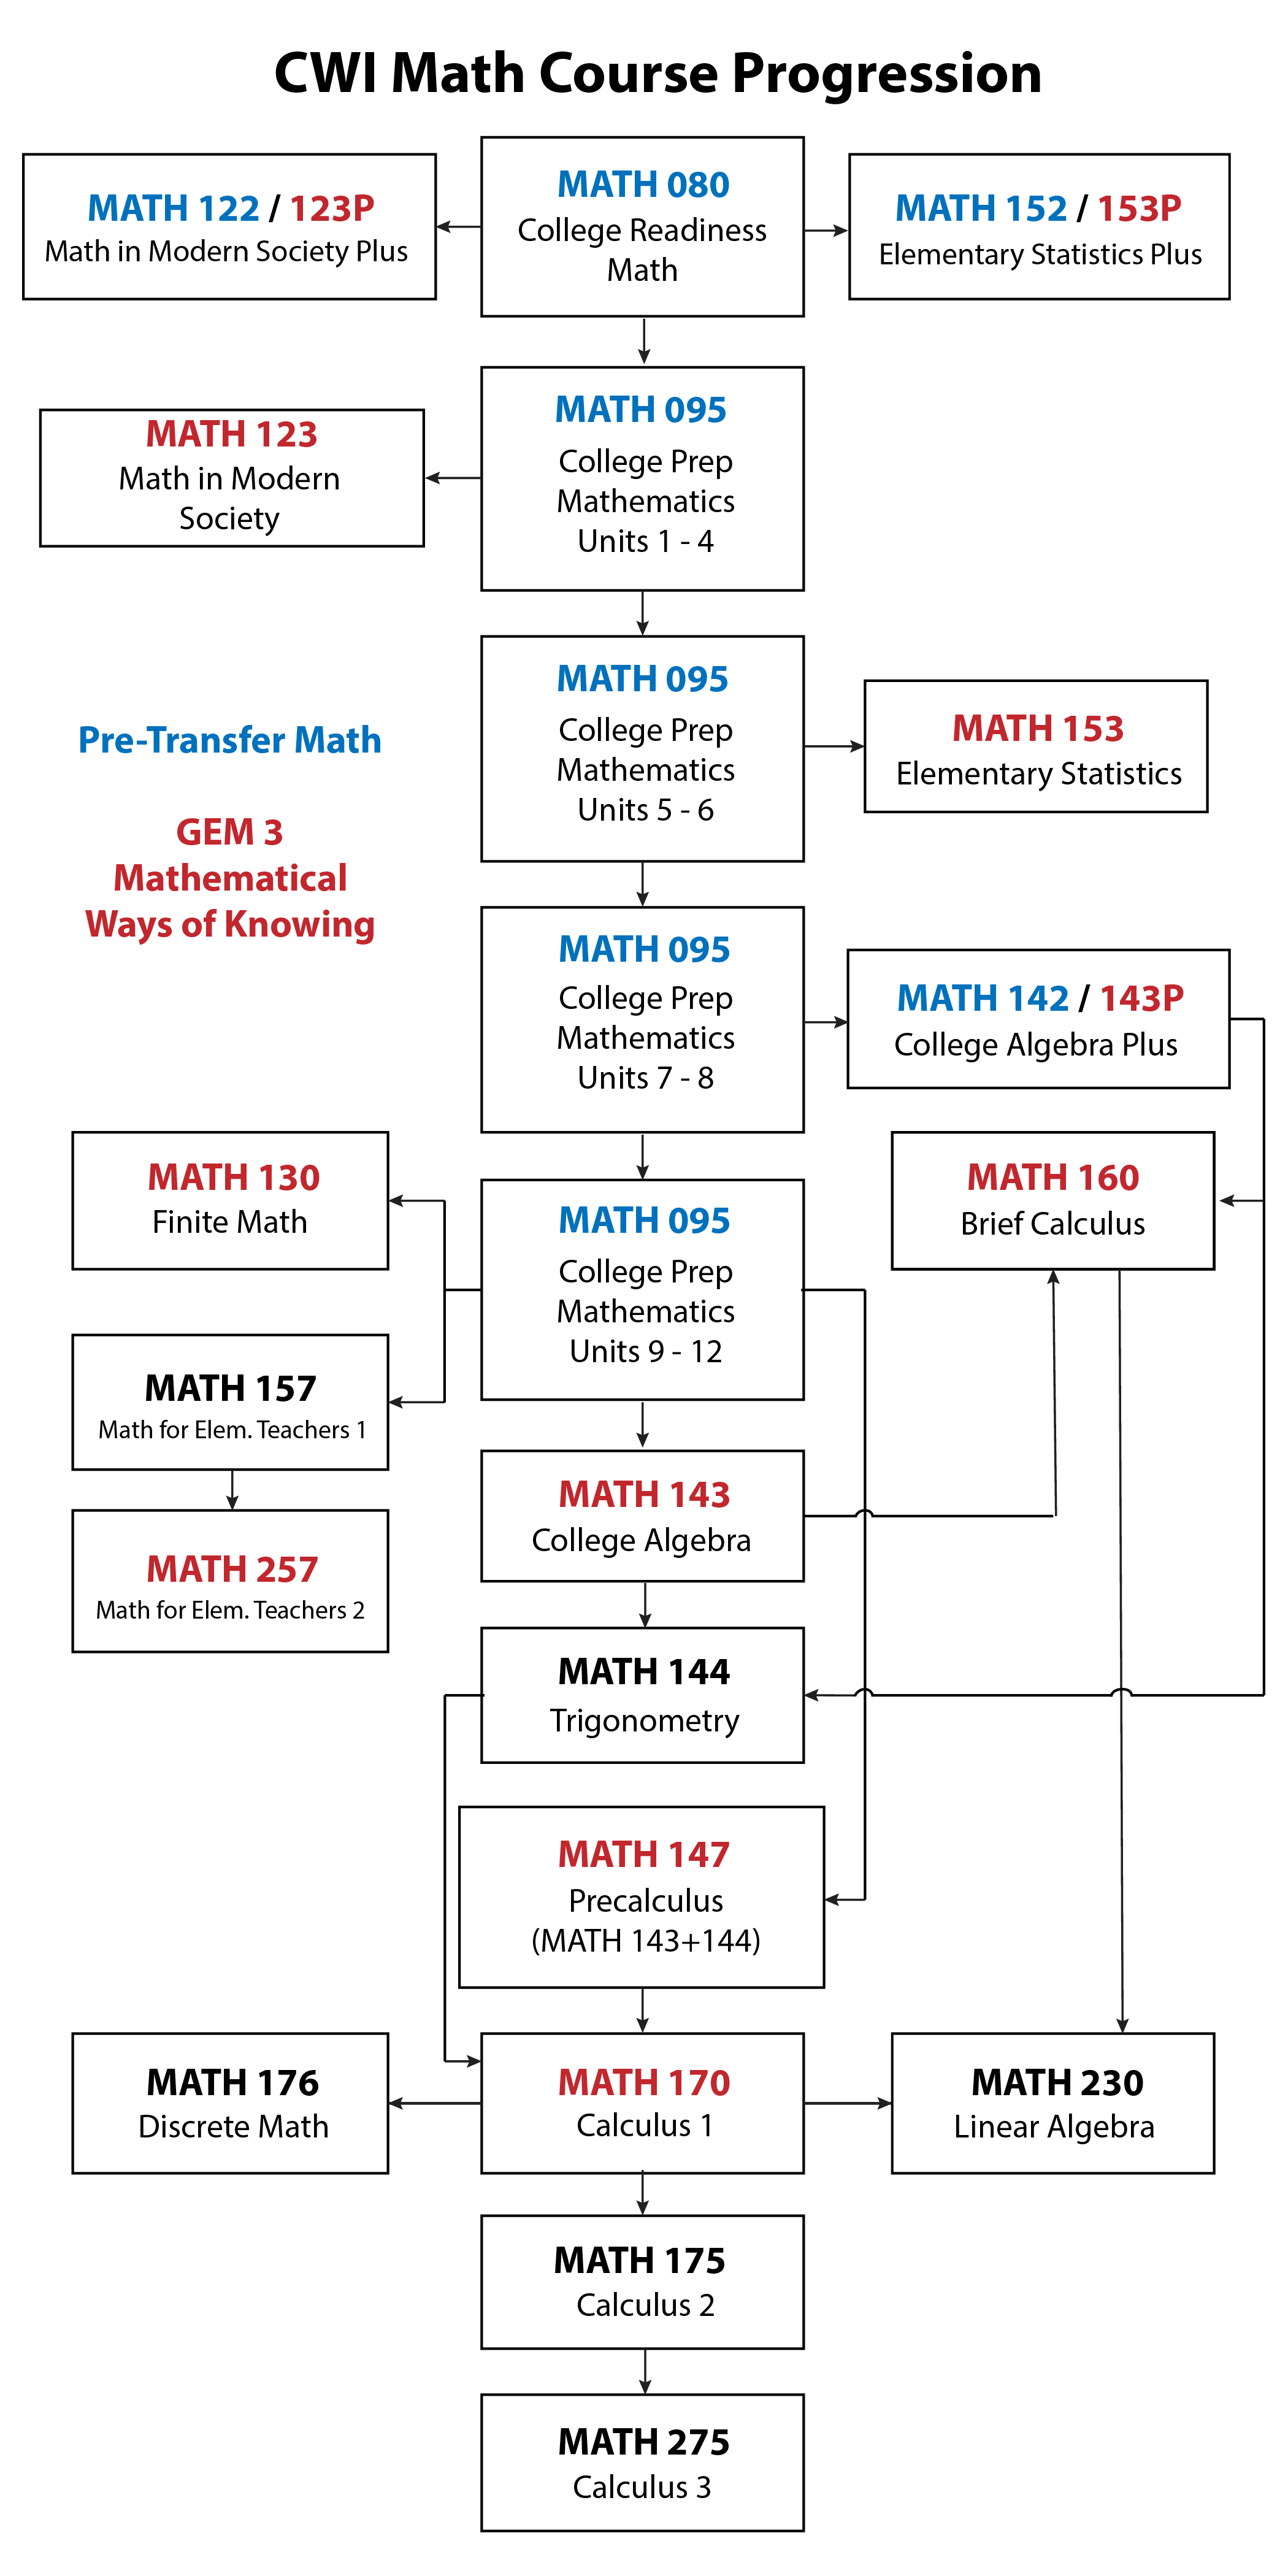 Math Skills Progression Chart